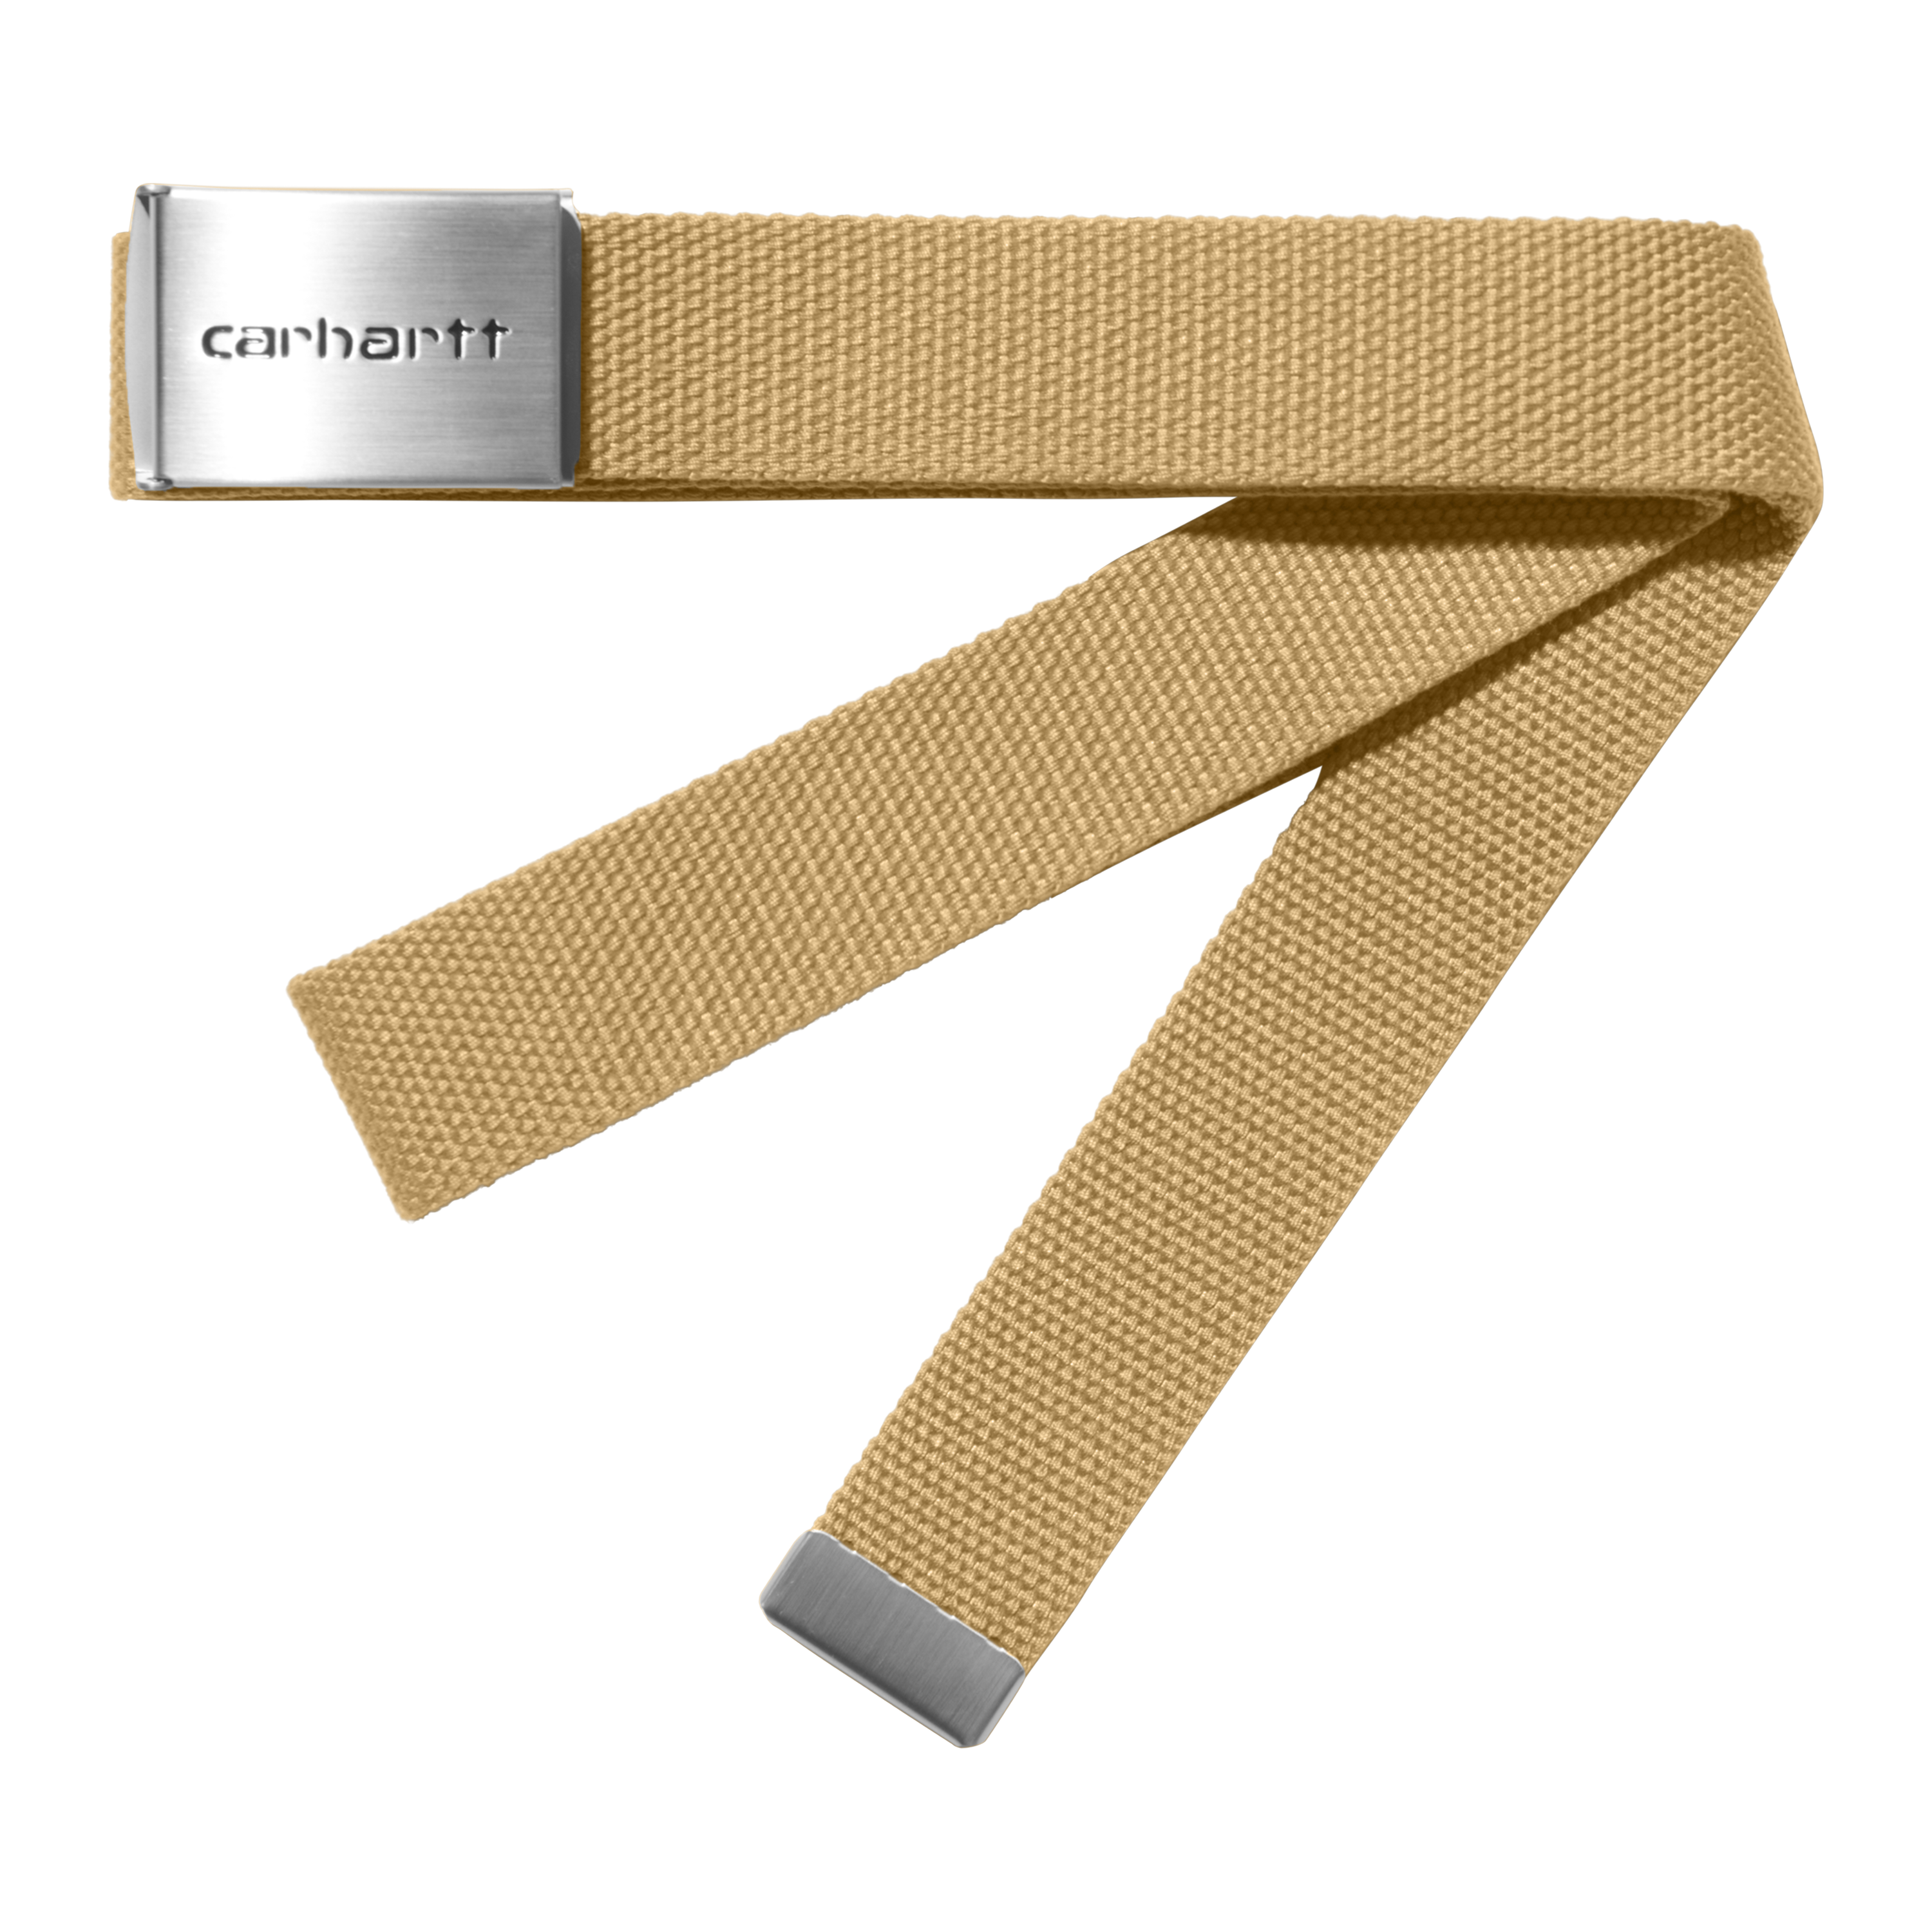 Carhartt Legacy - Cinturón de herramientas, color marrón Carhartt